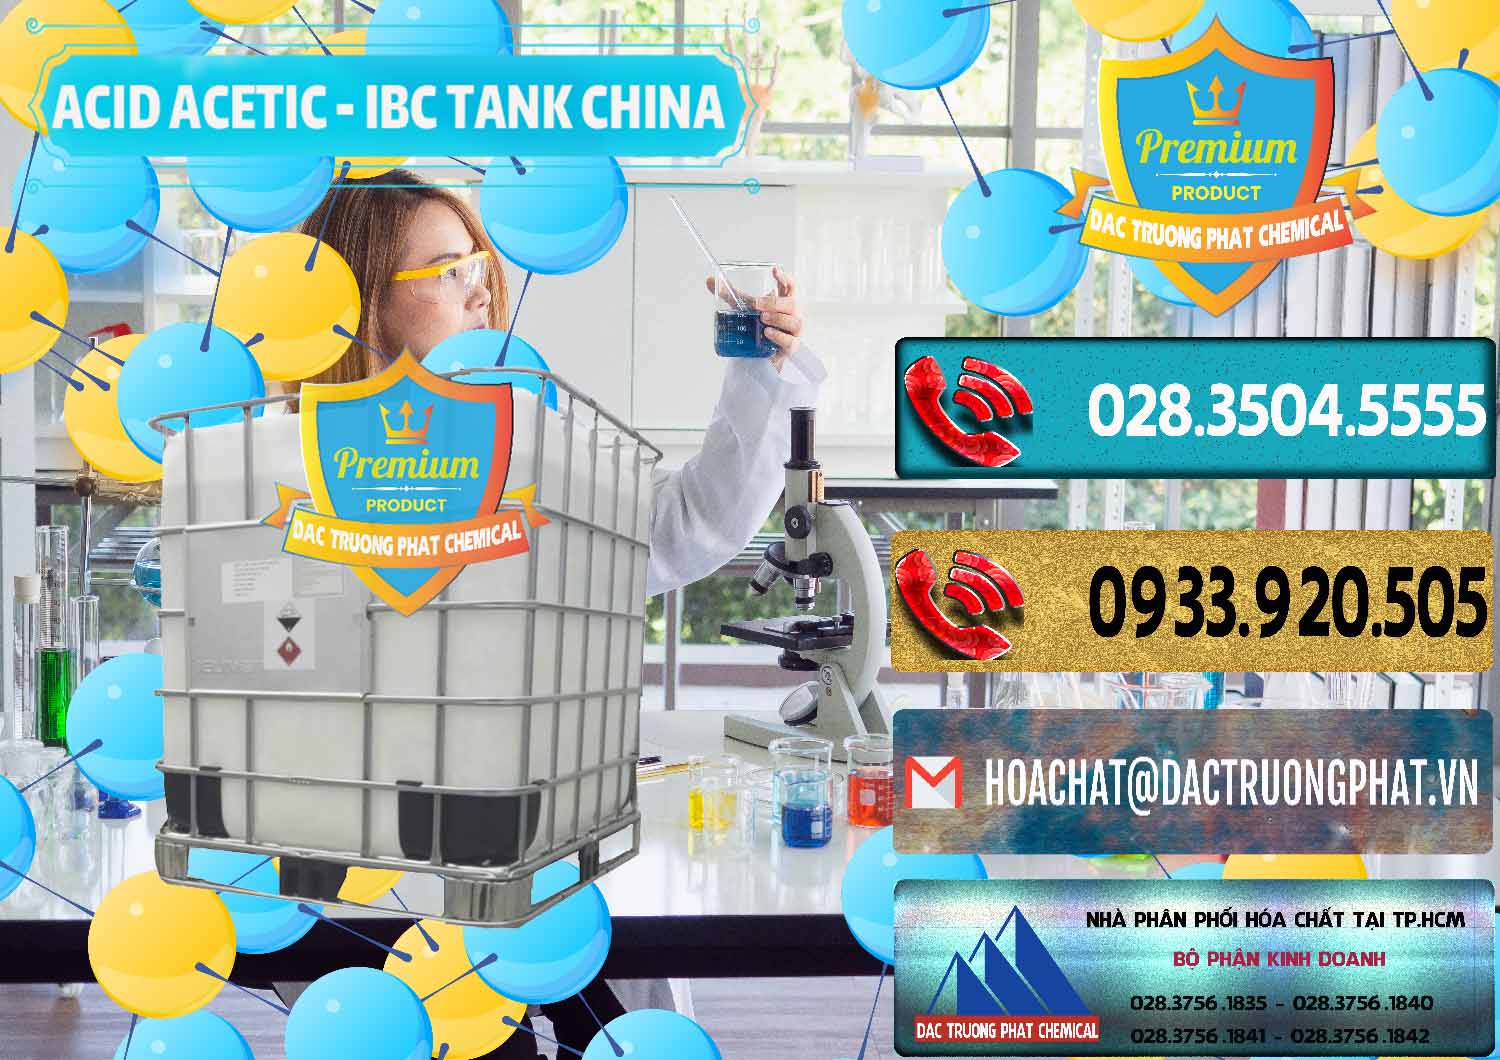 Công ty chuyên bán ( cung cấp ) Acetic Acid – Axit Acetic Tank Bồn IBC Trung Quốc China - 0443 - Cty phân phối ( nhập khẩu ) hóa chất tại TP.HCM - hoachatdetnhuom.com